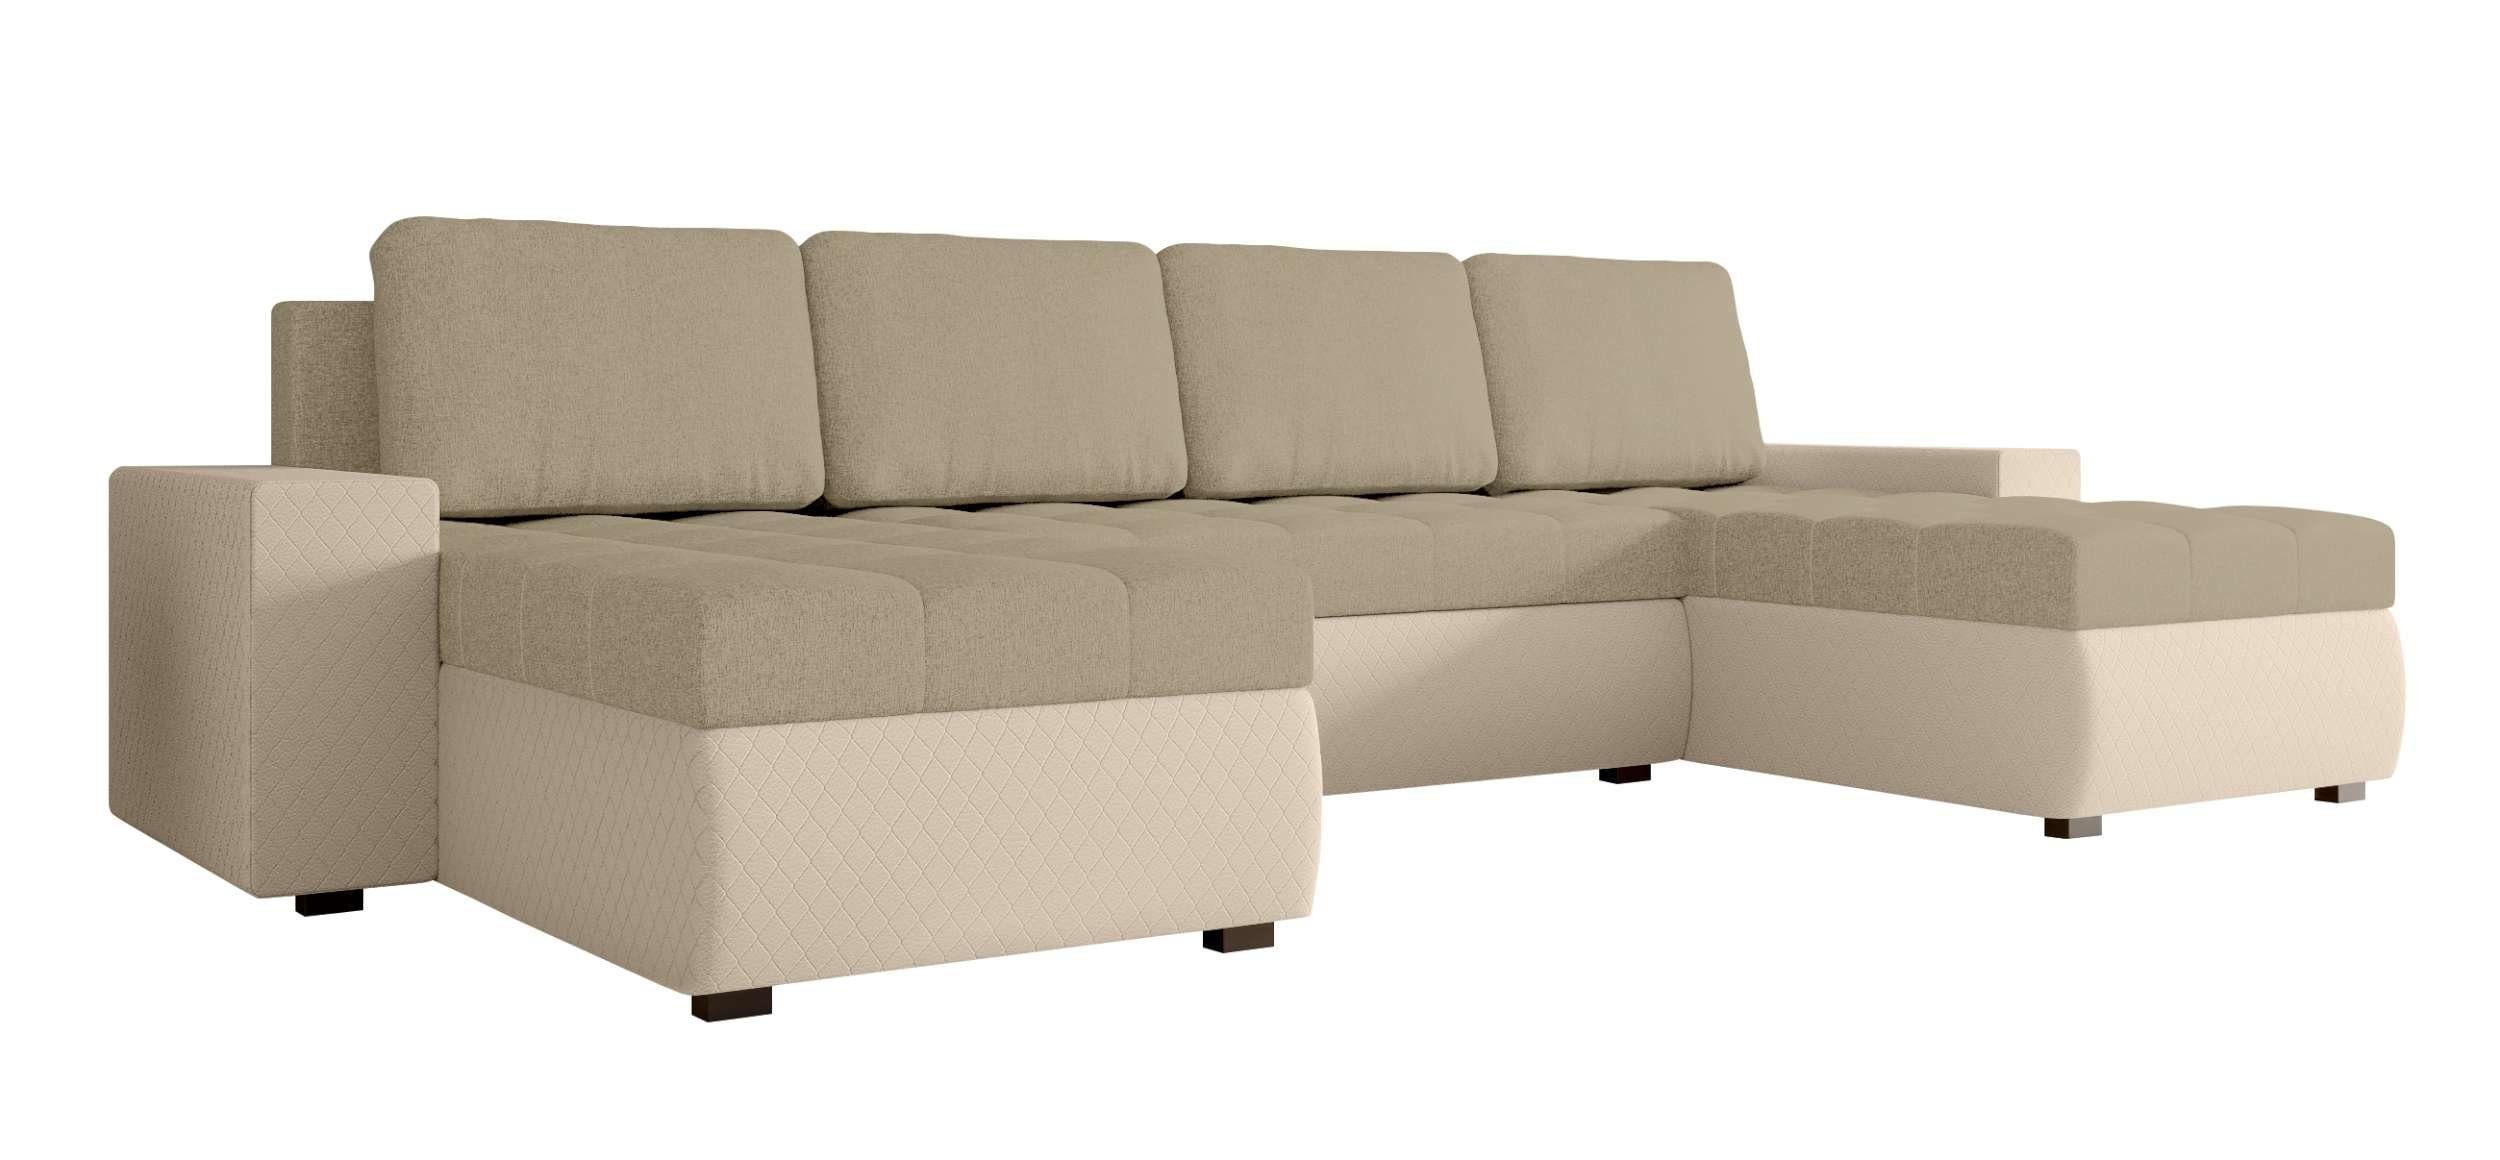 Sitzkomfort, Stylefy Amelia, mit Modern Design U-Form, Sofa, Bettkasten, Eckcouch, Wohnlandschaft mit Bettfunktion,